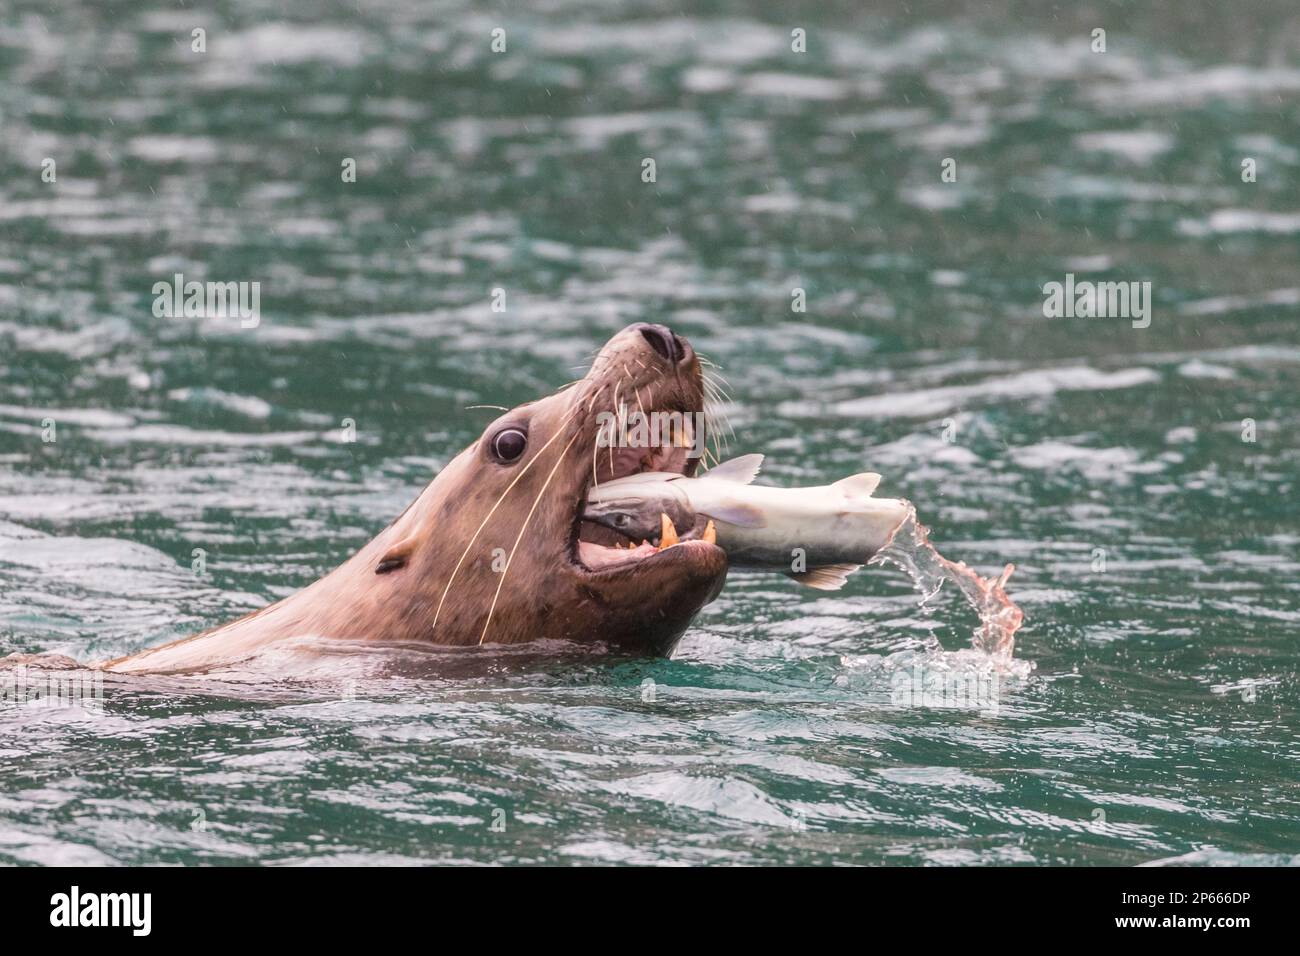 Ausgewachsener männlicher Steller Seelöwe (Eumetopias jubatus), der auf den Inian-Inseln im Südosten Alaskas, Vereinigte Staaten von Amerika, Nordamerika einen Lachs zerstückelt Stockfoto